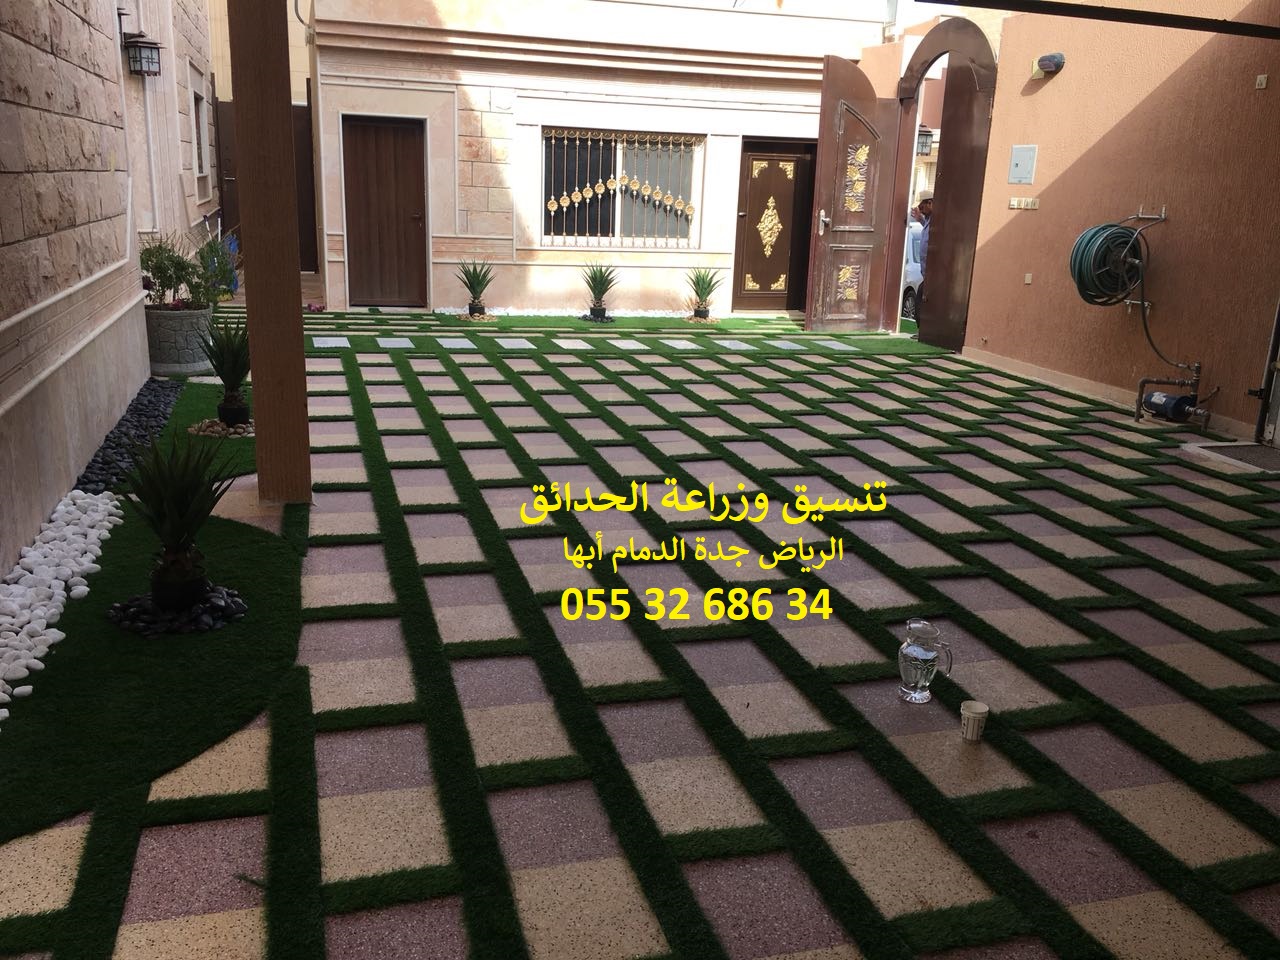 شركة تنسيق حدائق الرياض جدة الدمام ابها 0553268634 P_8678nhu22